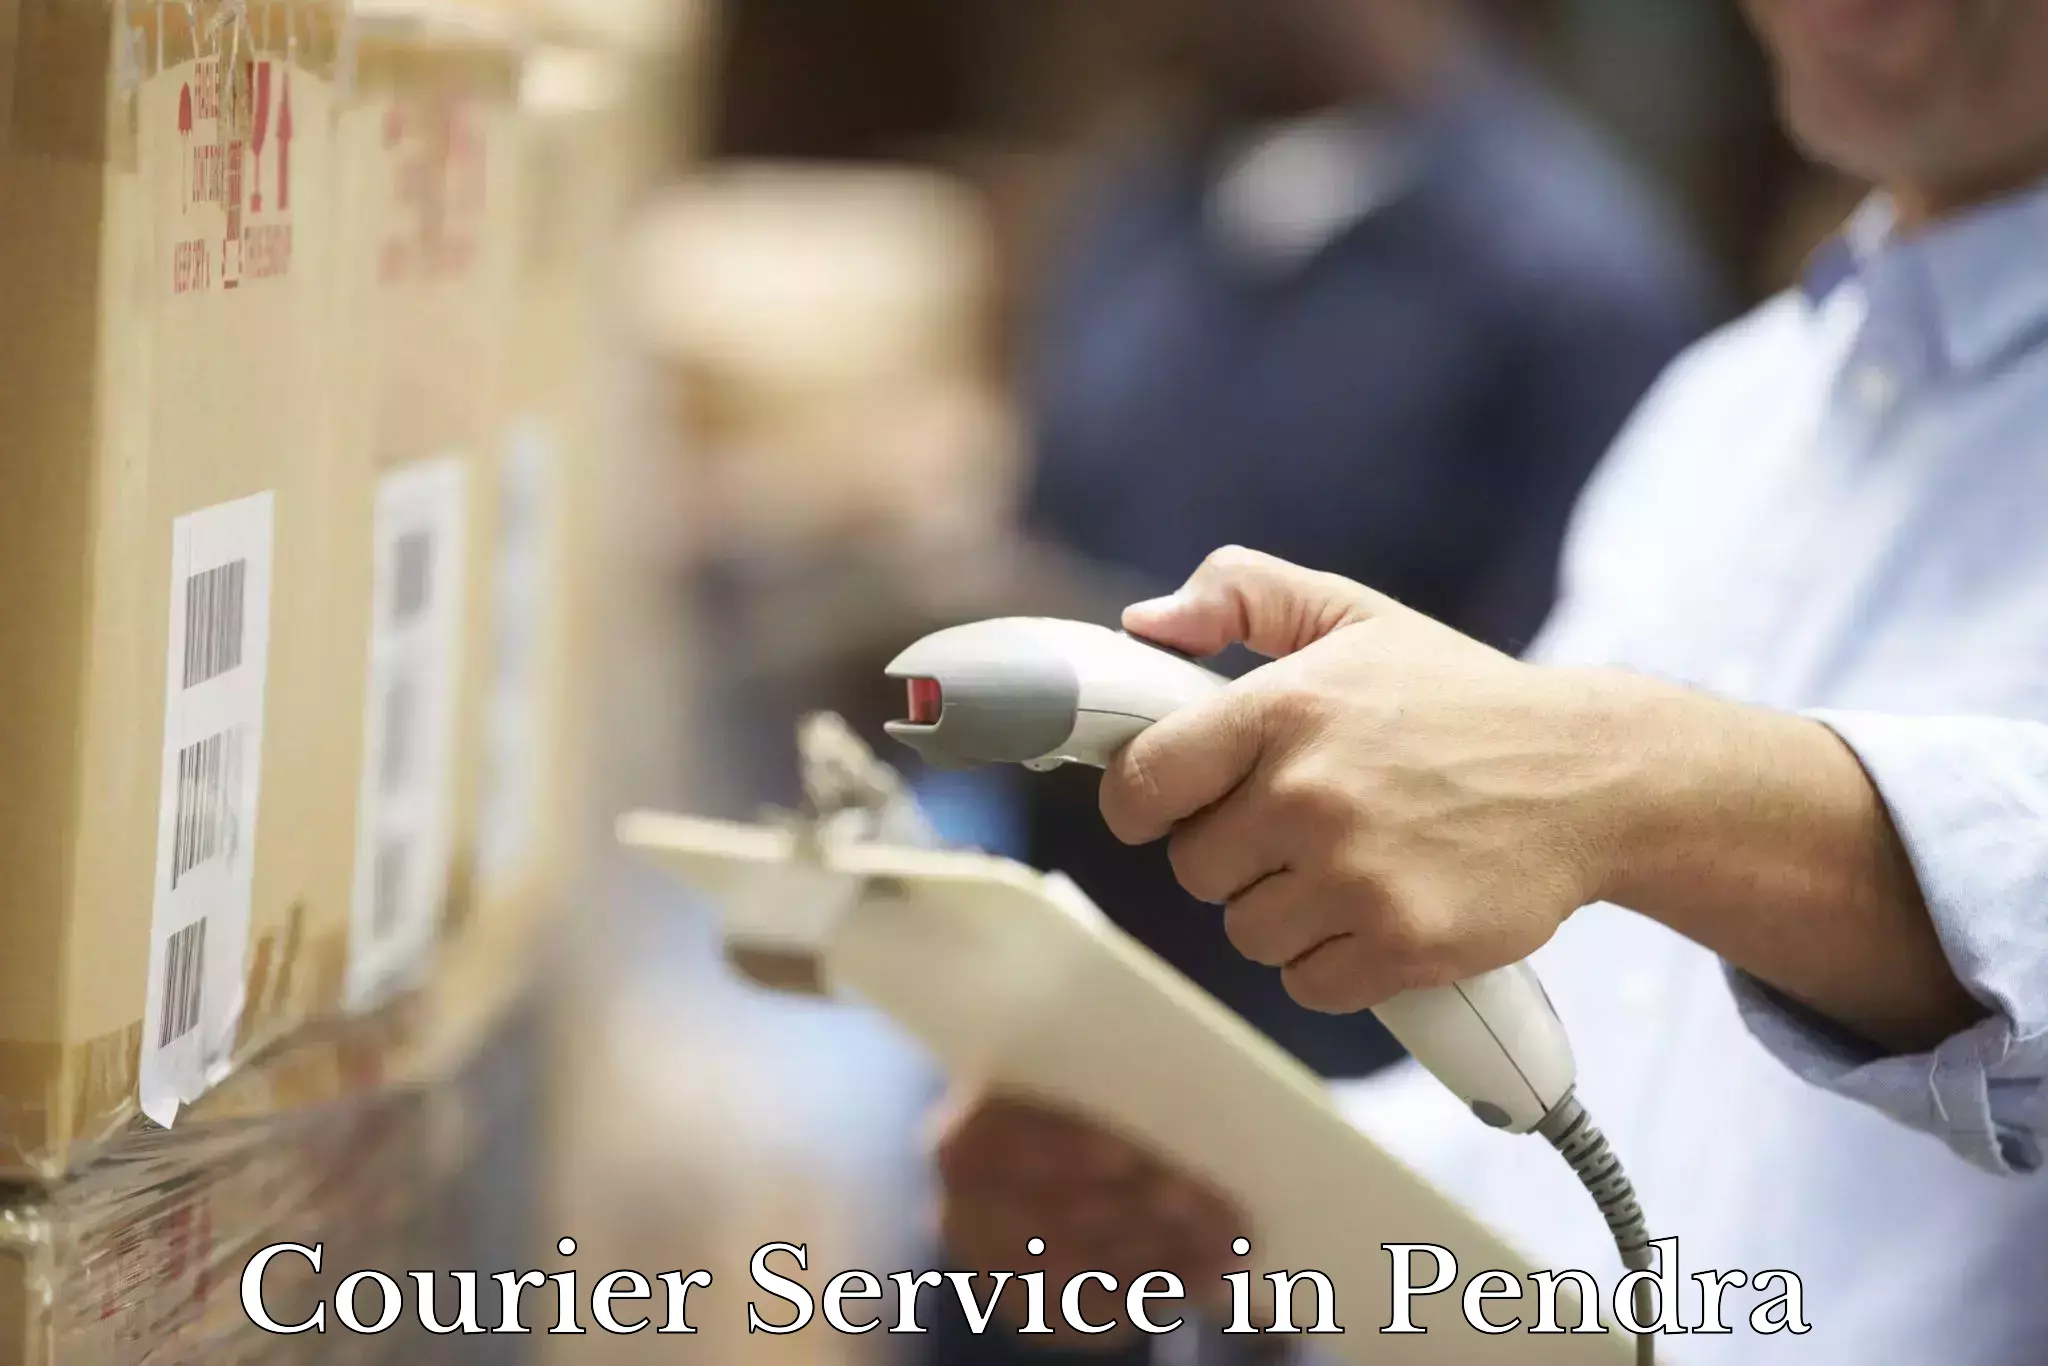 Premium delivery services in Pendra